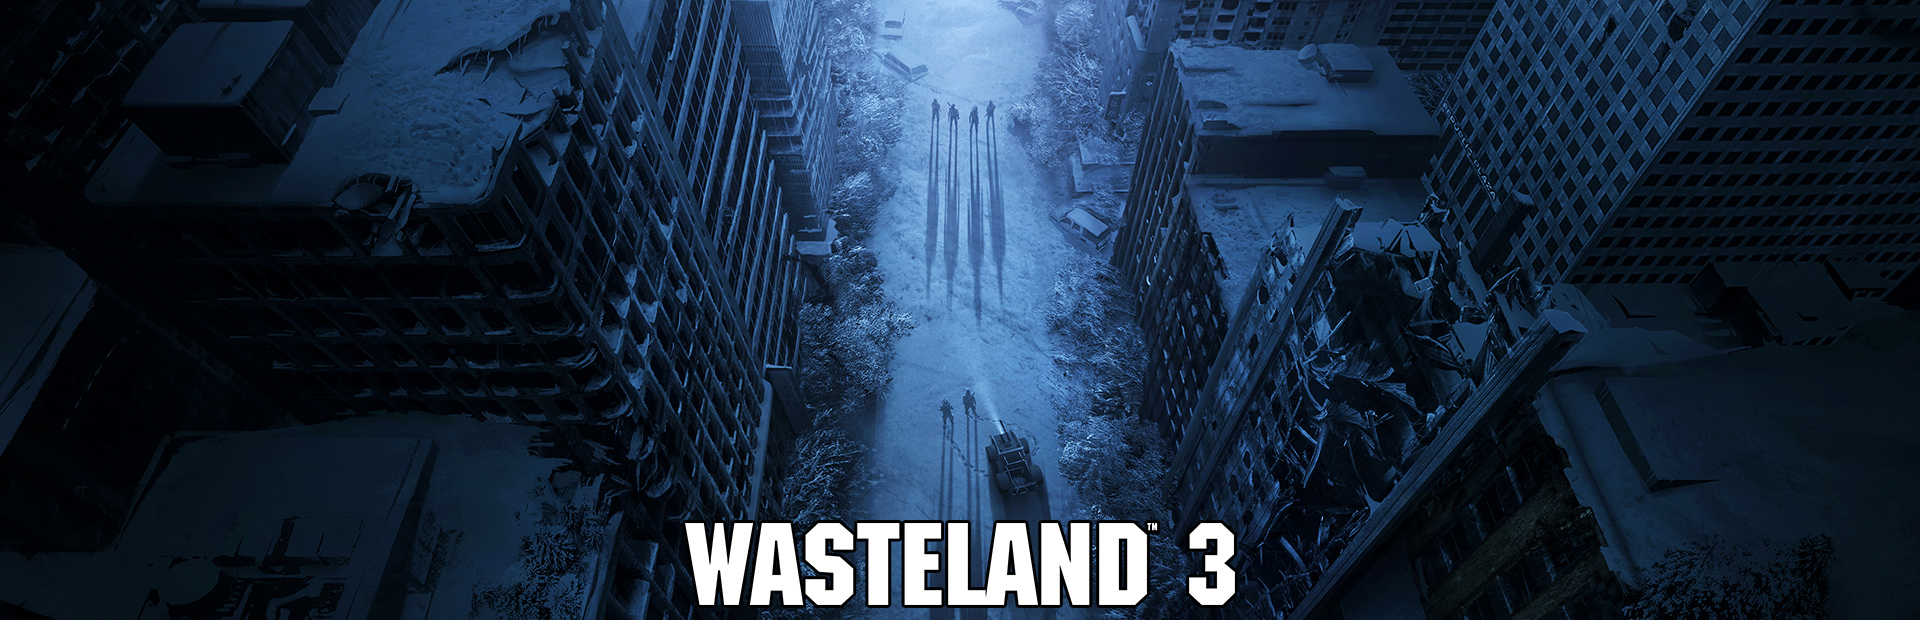 دانلود بازی Wasteland 3 برای PC | گیمباتو 